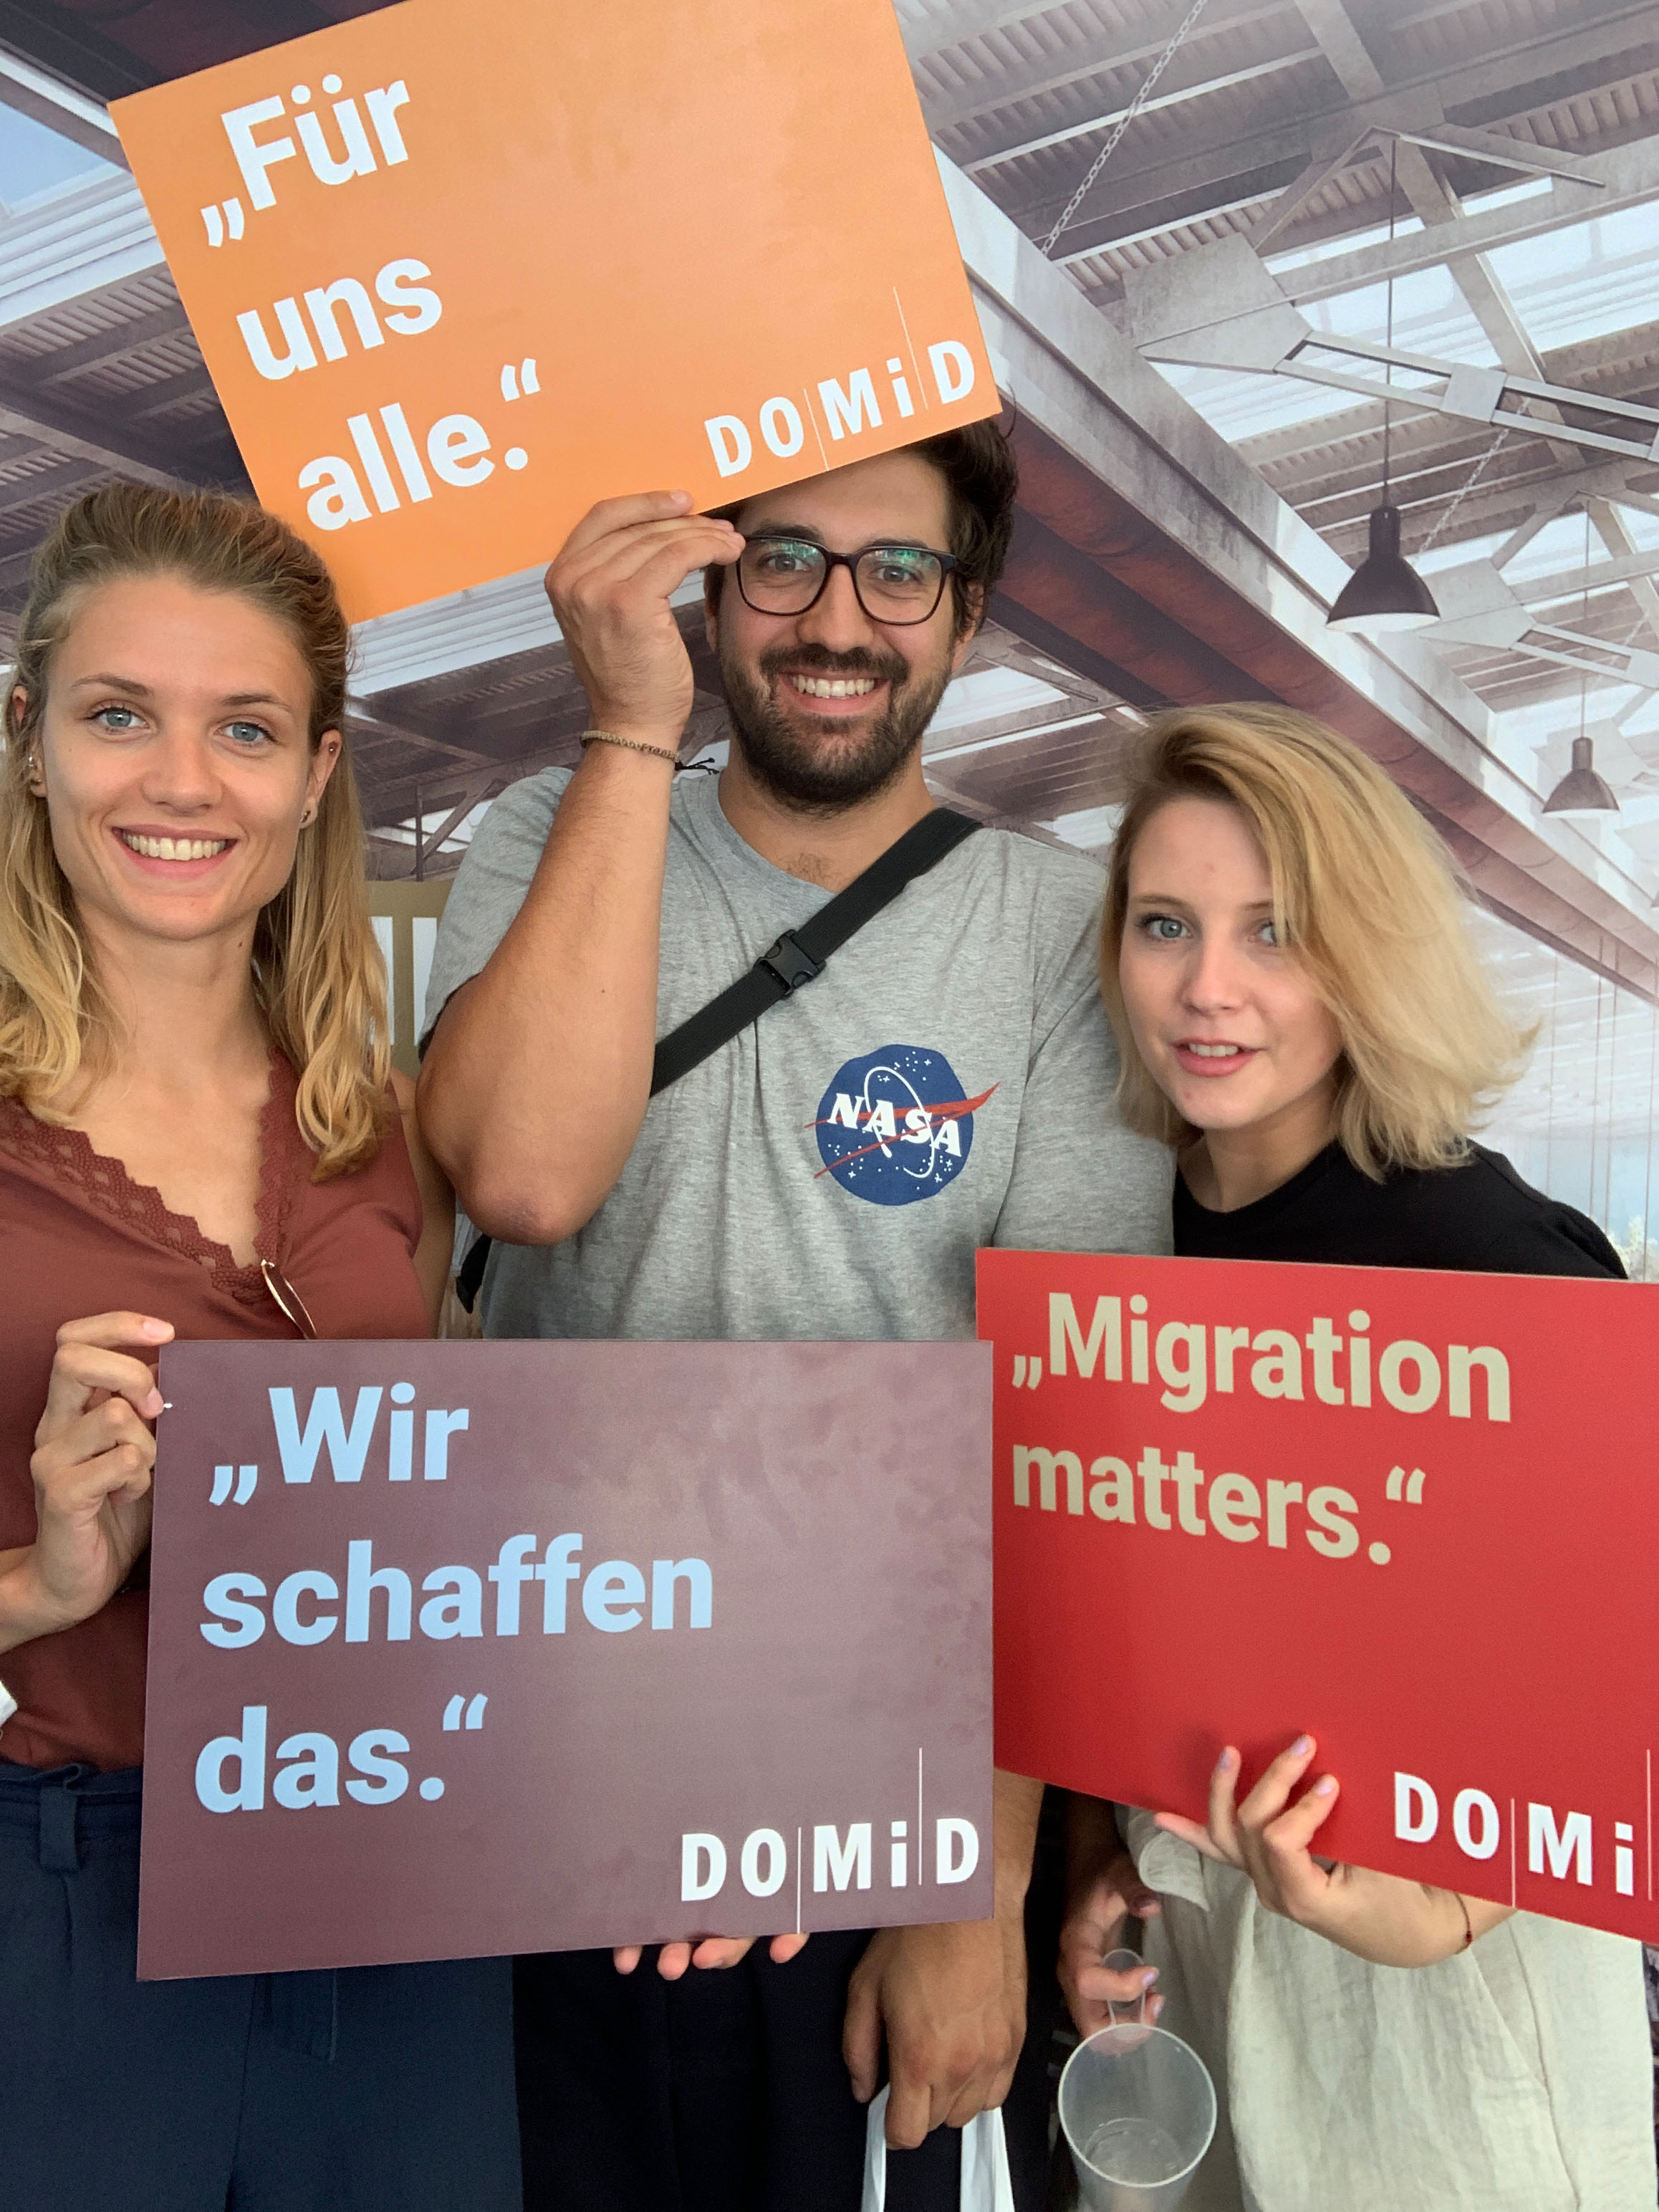 Fotoaktion auf dem Tag der offenen Tür der Bundesregierung für ein zentrales Migrationsmuseum in Deutschland, 17.08.2019, Berlin. Foto: DOMiD-Archiv, Köln